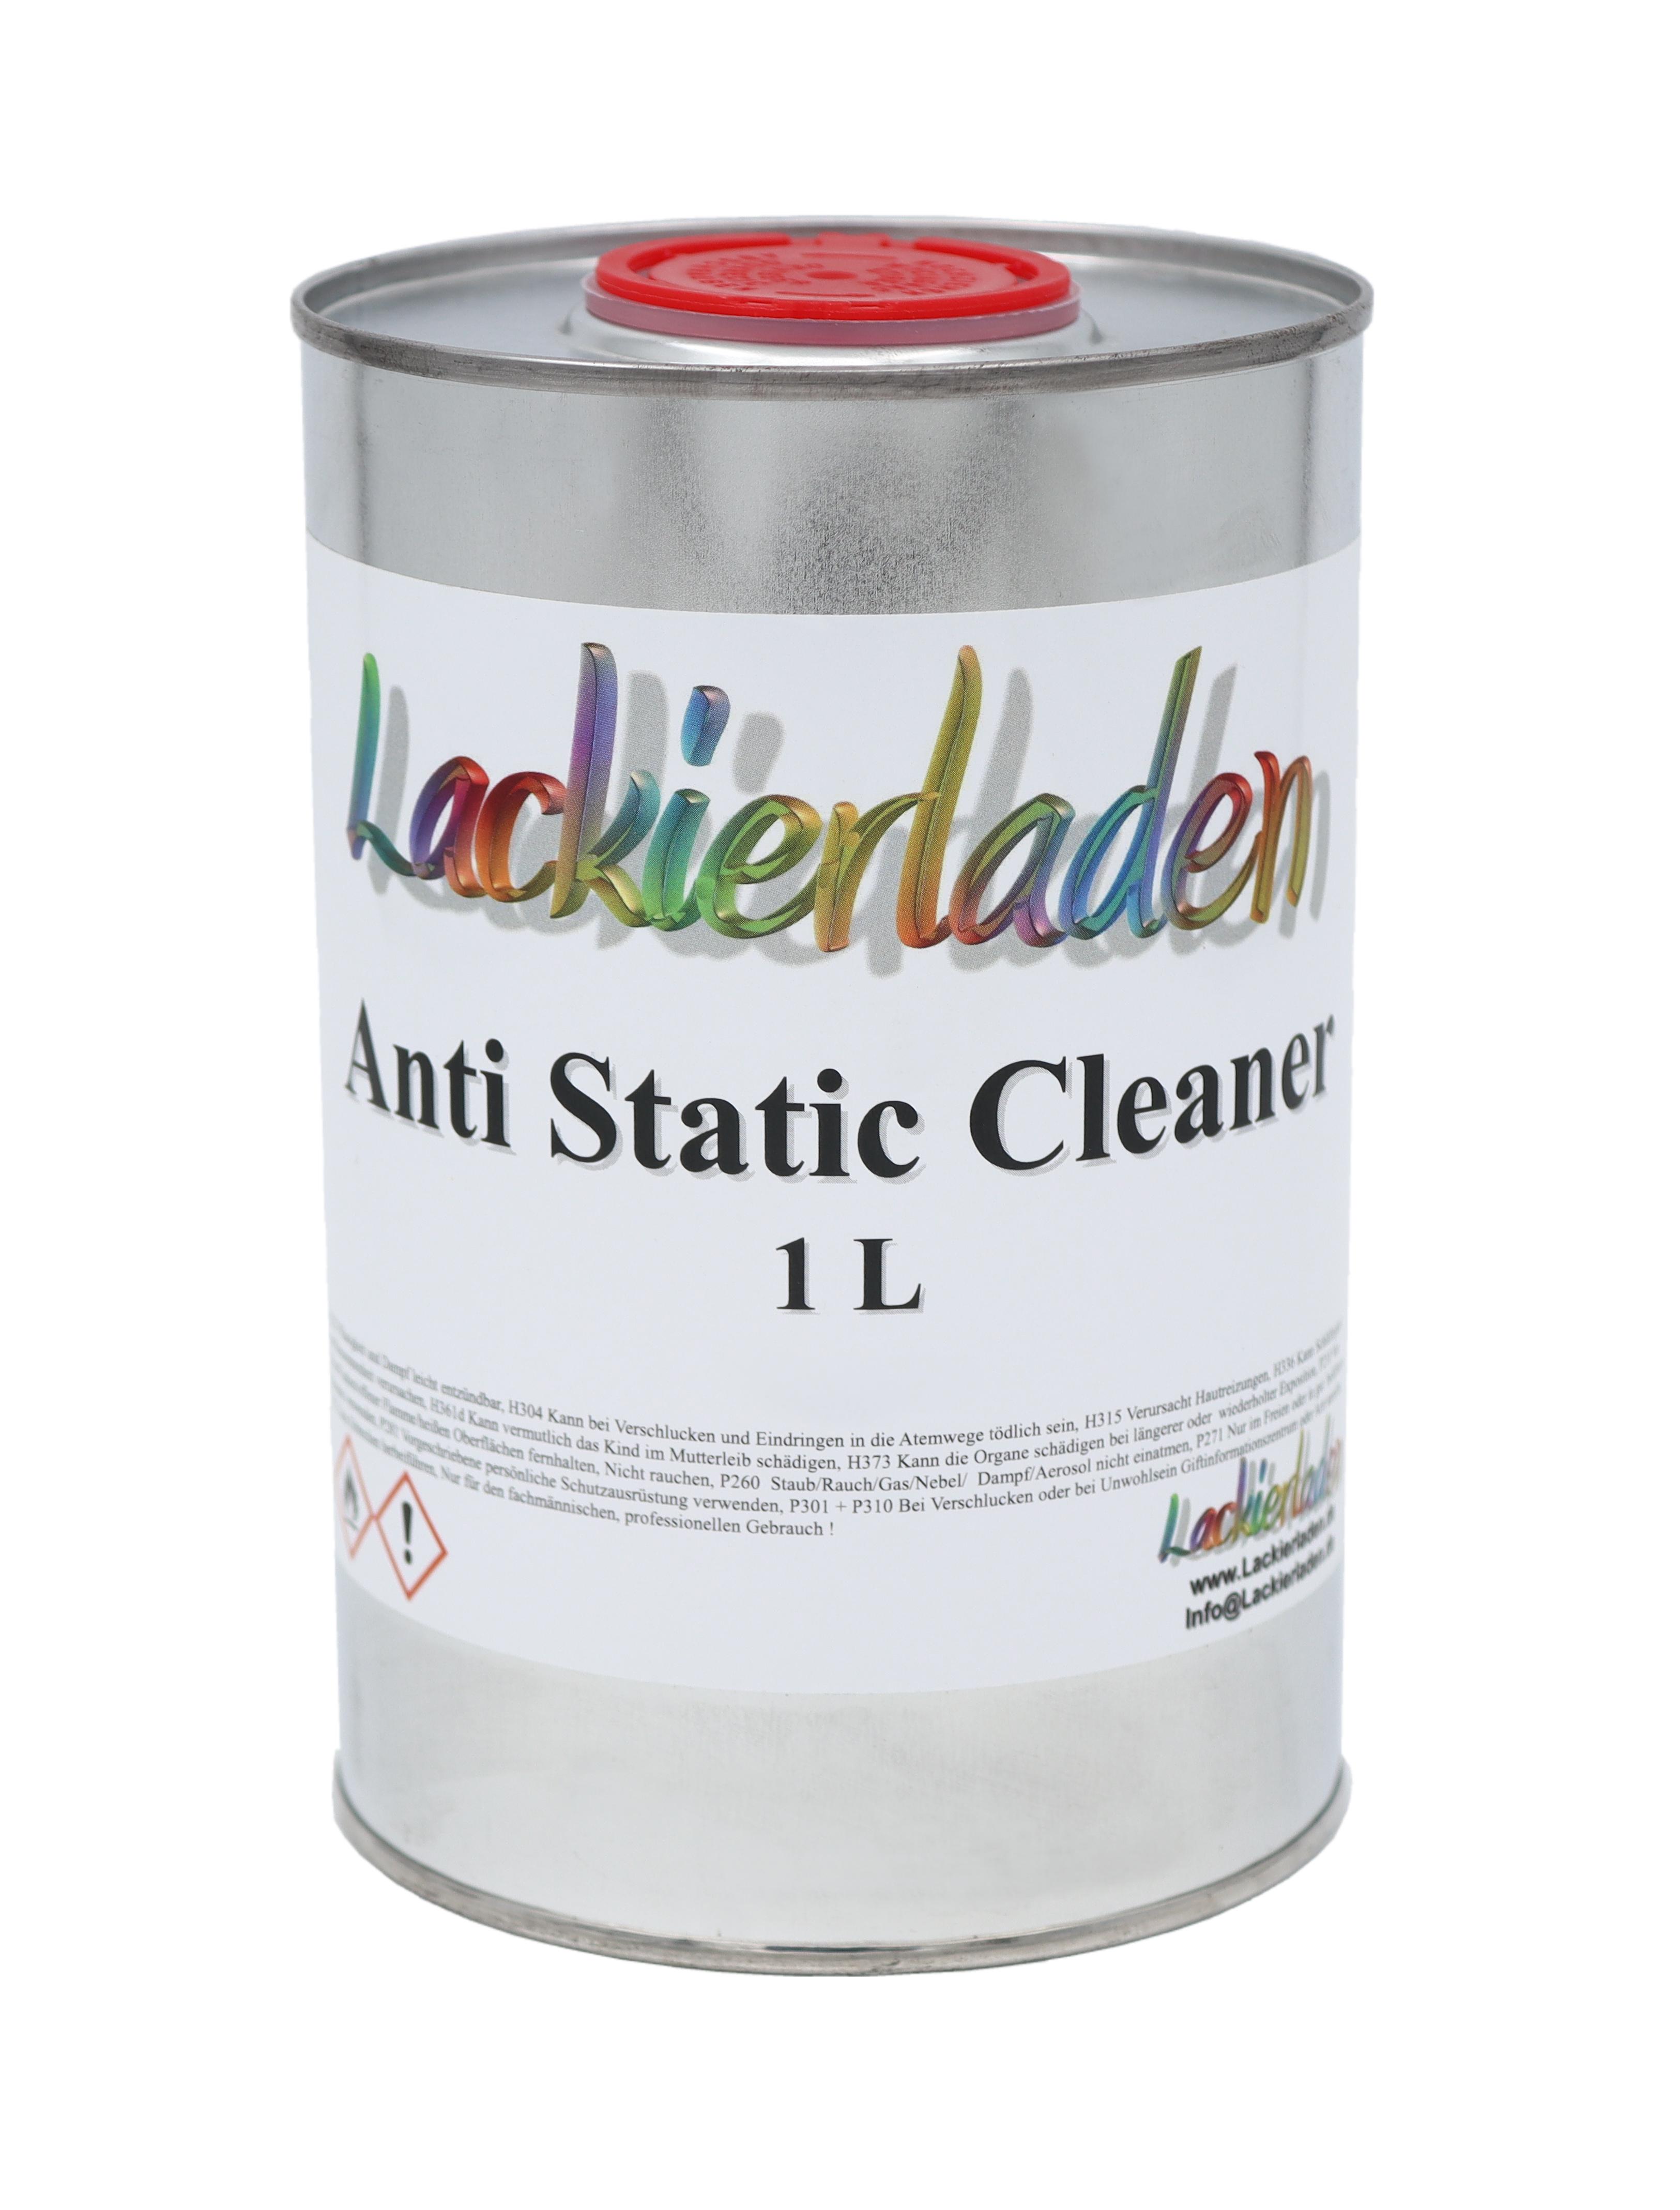 Anti Static Cleaner 1,0 L | reinigen entfetten antistatisch 1000 ml 1L